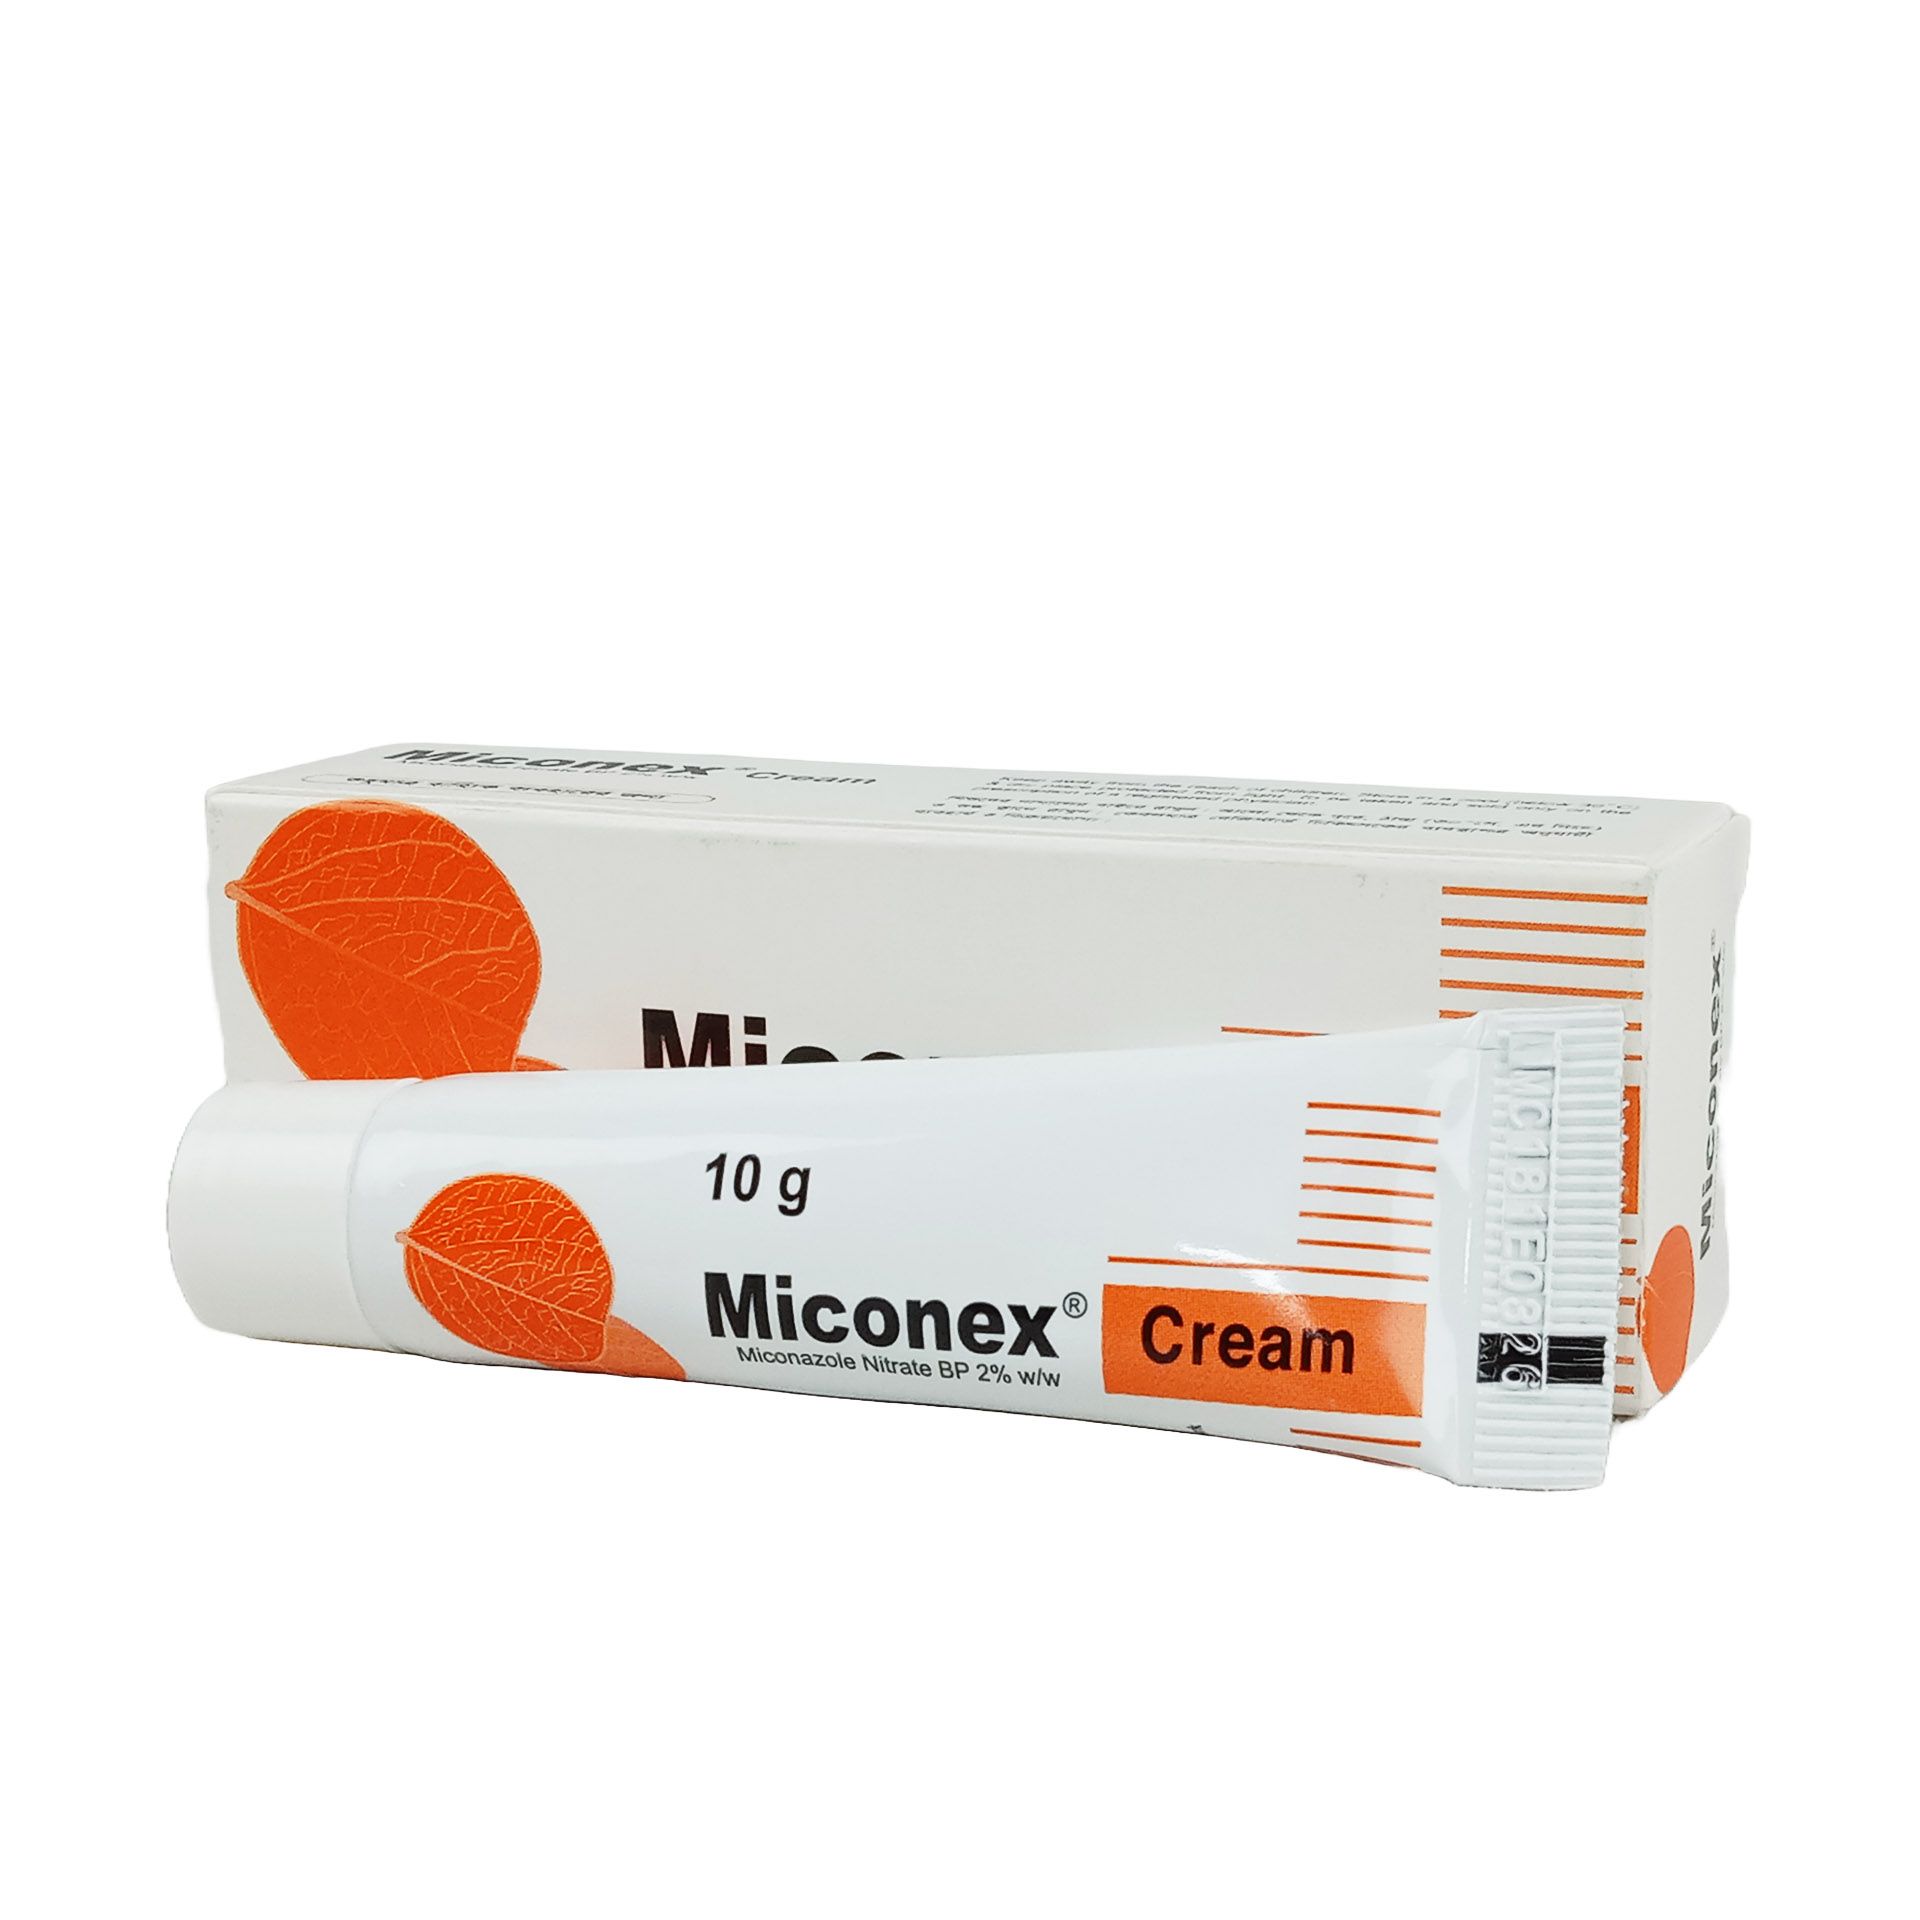 Miconex 2% Cream